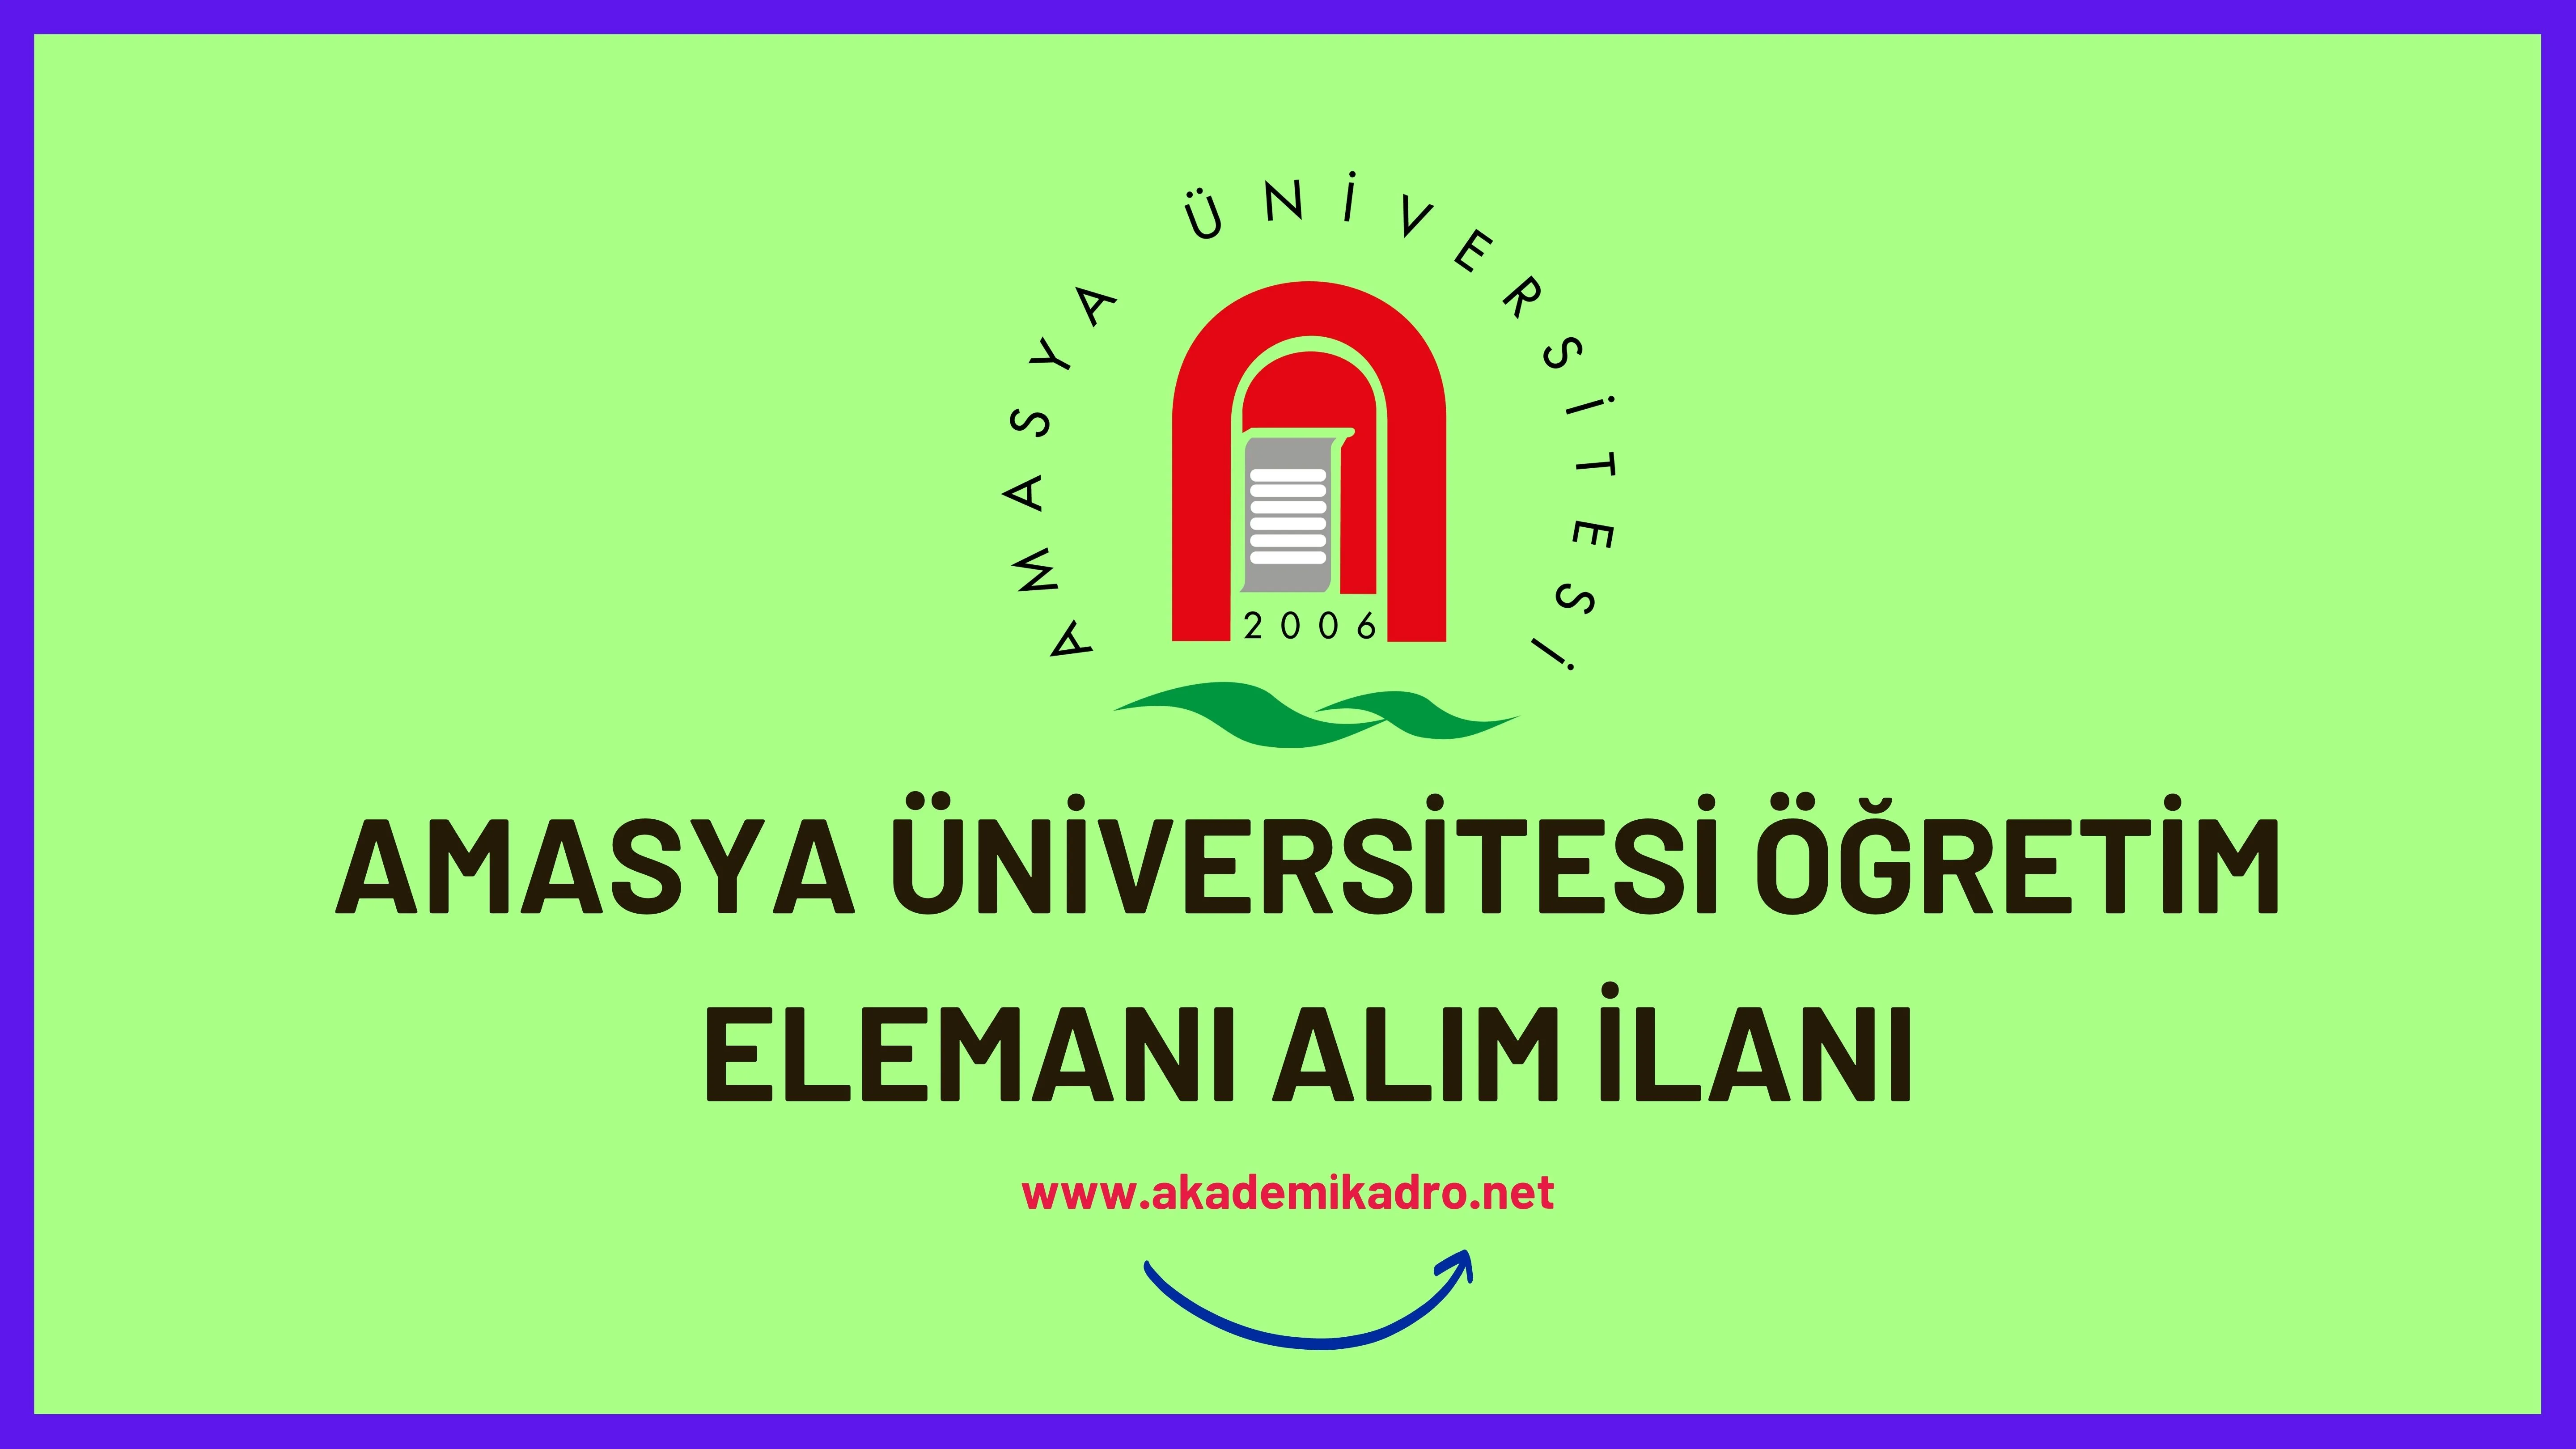 Amasya Üniversitesi 24 öğretim üyesi ve 2 Öğretim görevlisi alacaktır. Son başvuru tarihi 28 Kasım 2022